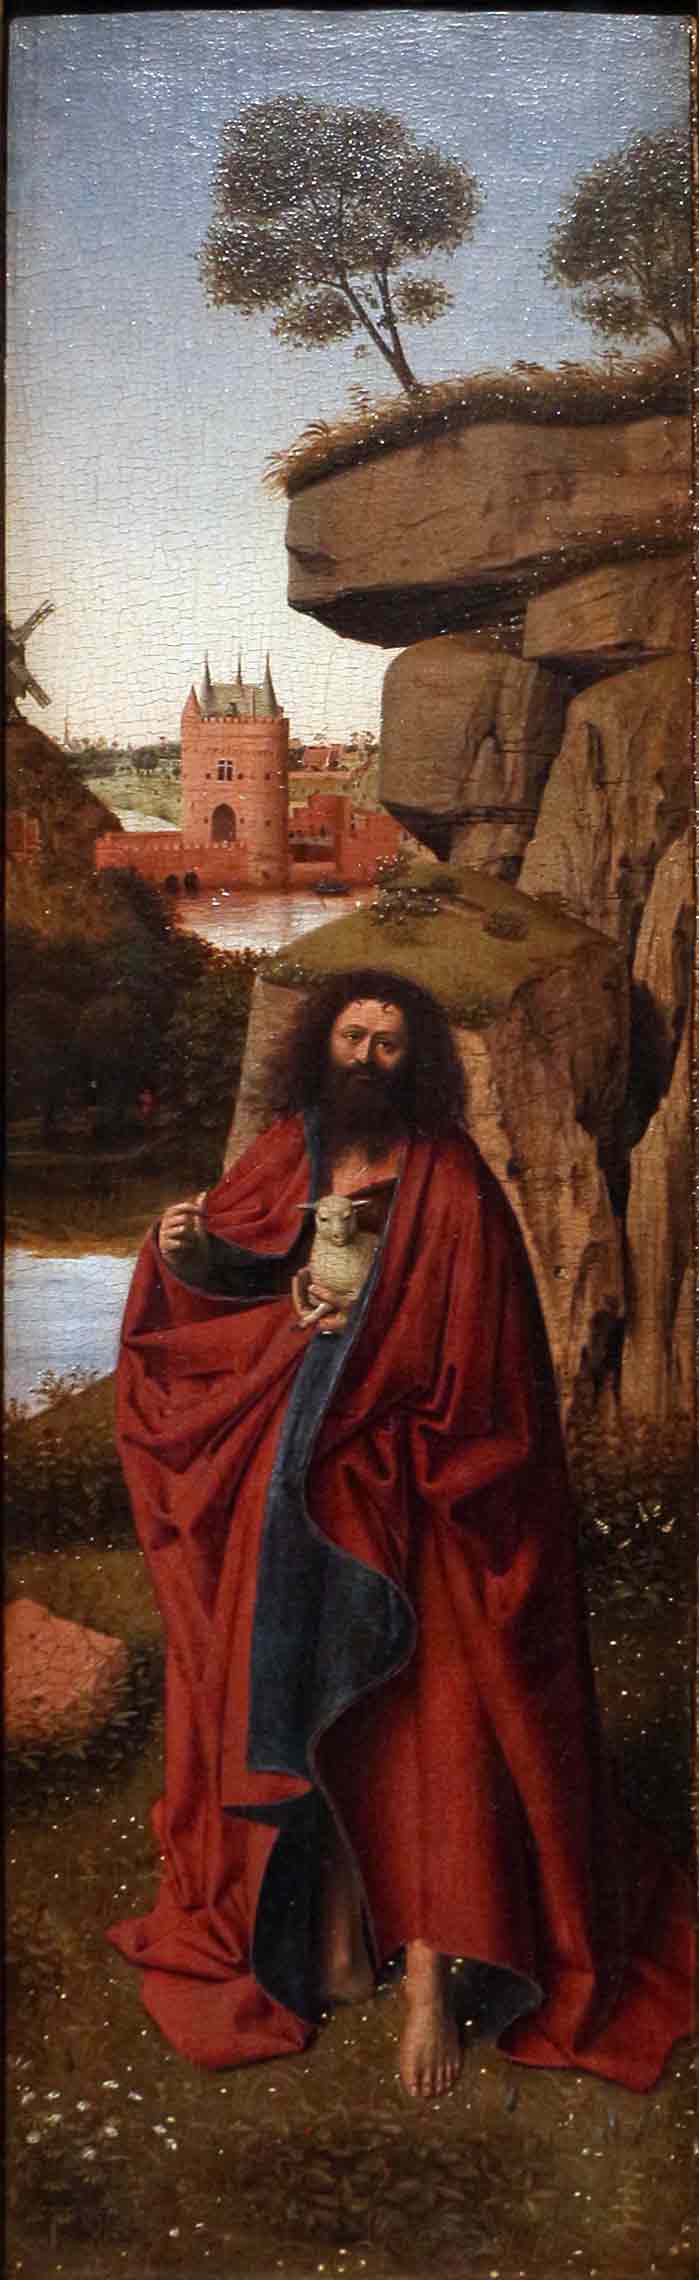 Кристус, Петрус. Иоанн Креститель на фоне пейзажа